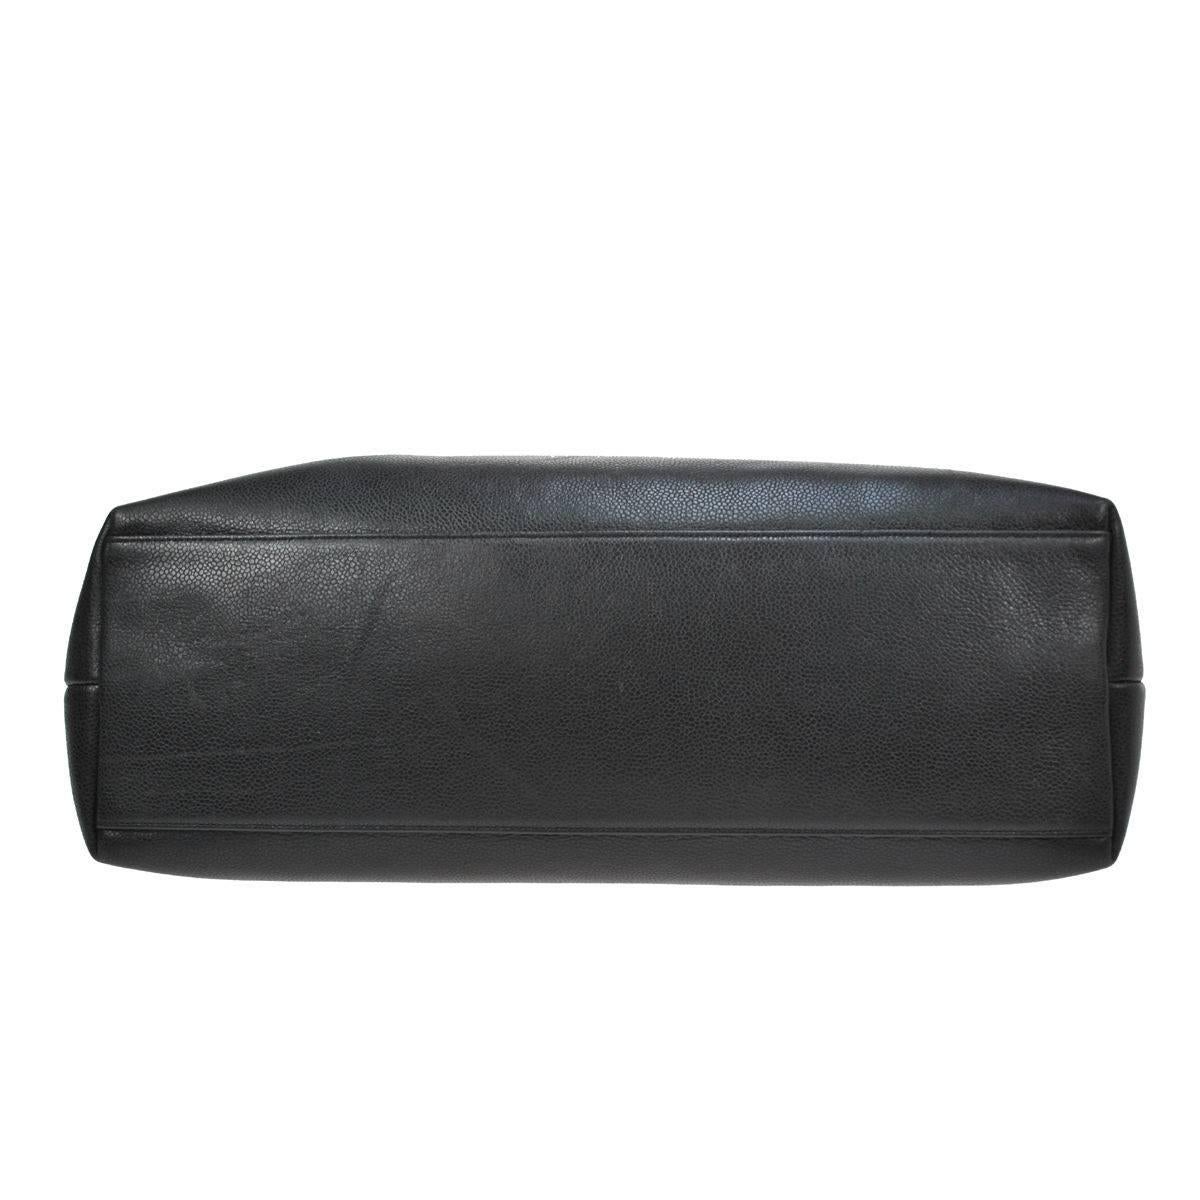 Chanel Black Caviar Leather Carryall Shopper Weekender Travel Shoulder Bag 2